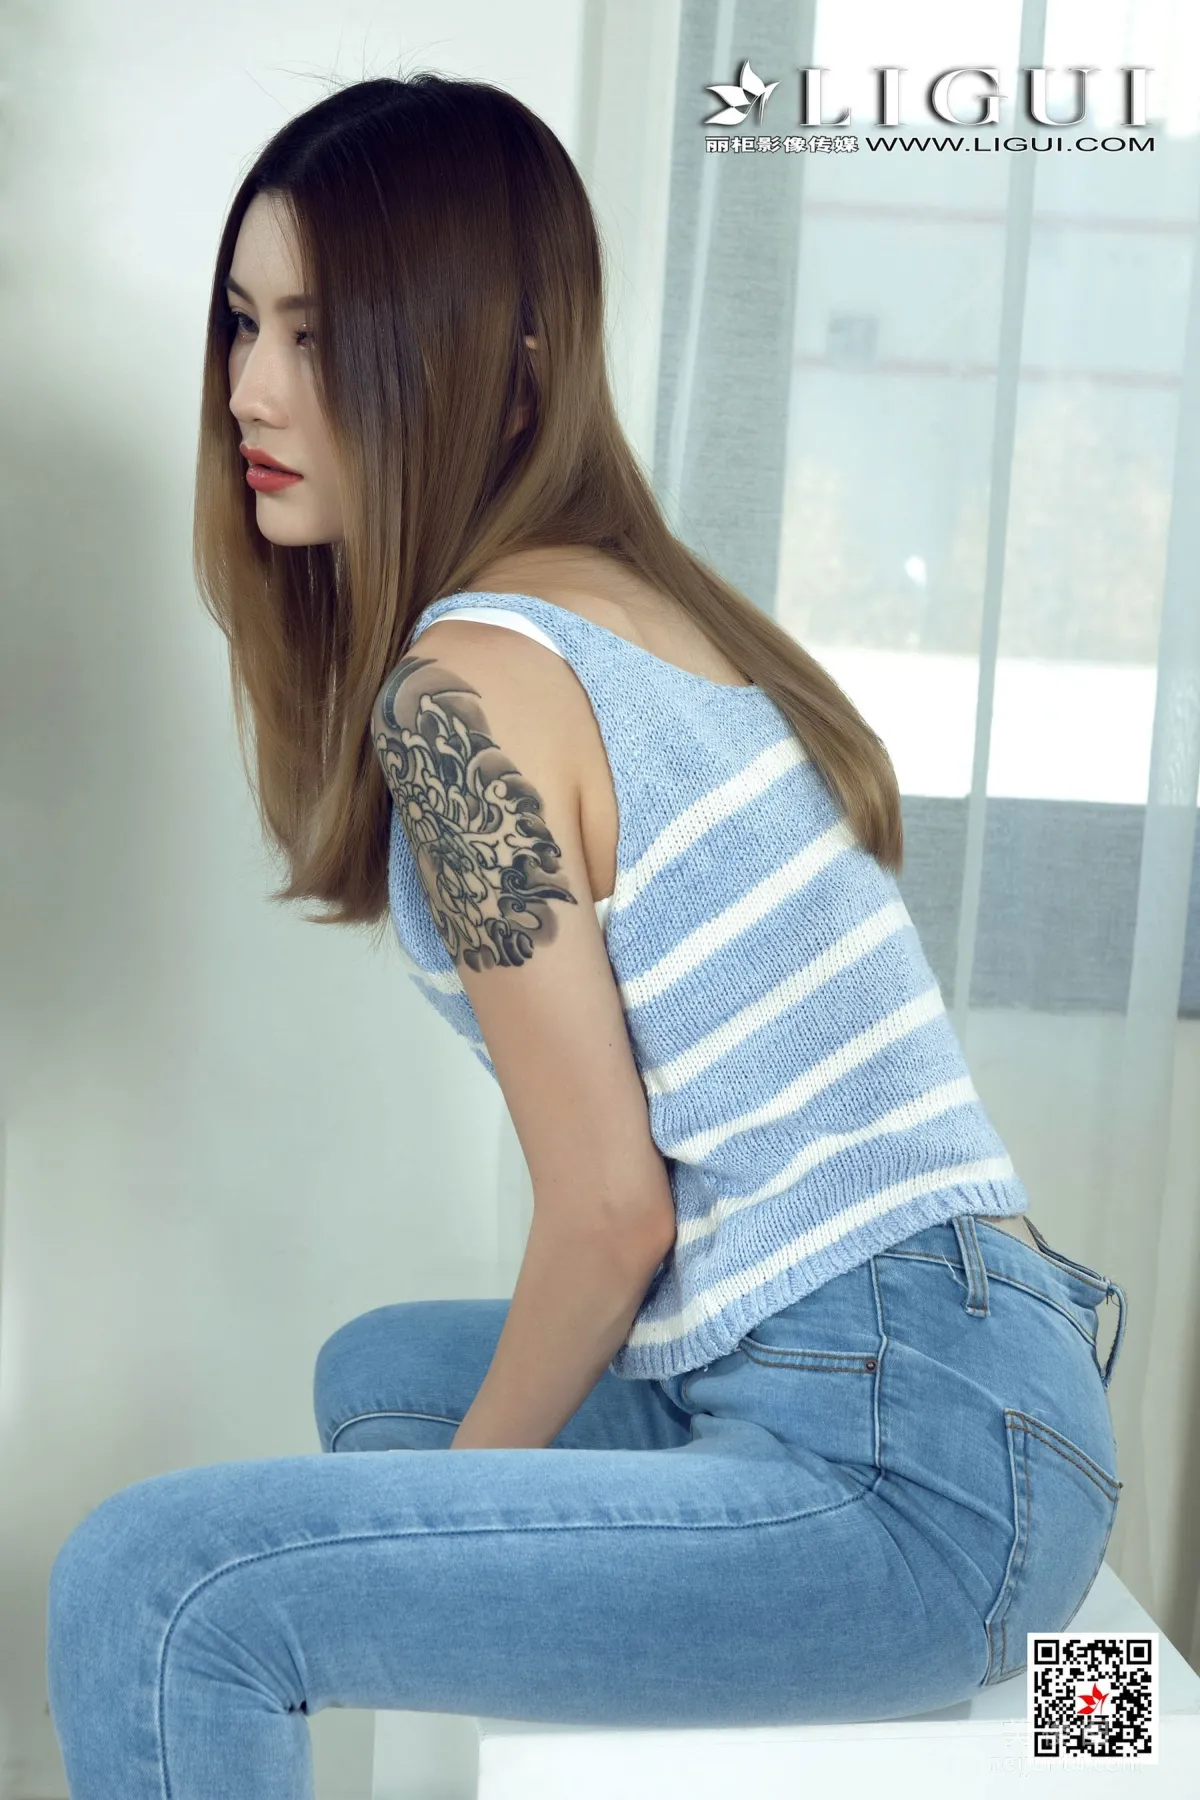 [丽柜Ligui] 网络丽人 Model 甜甜 《长腿牛仔女郎》 写真集4